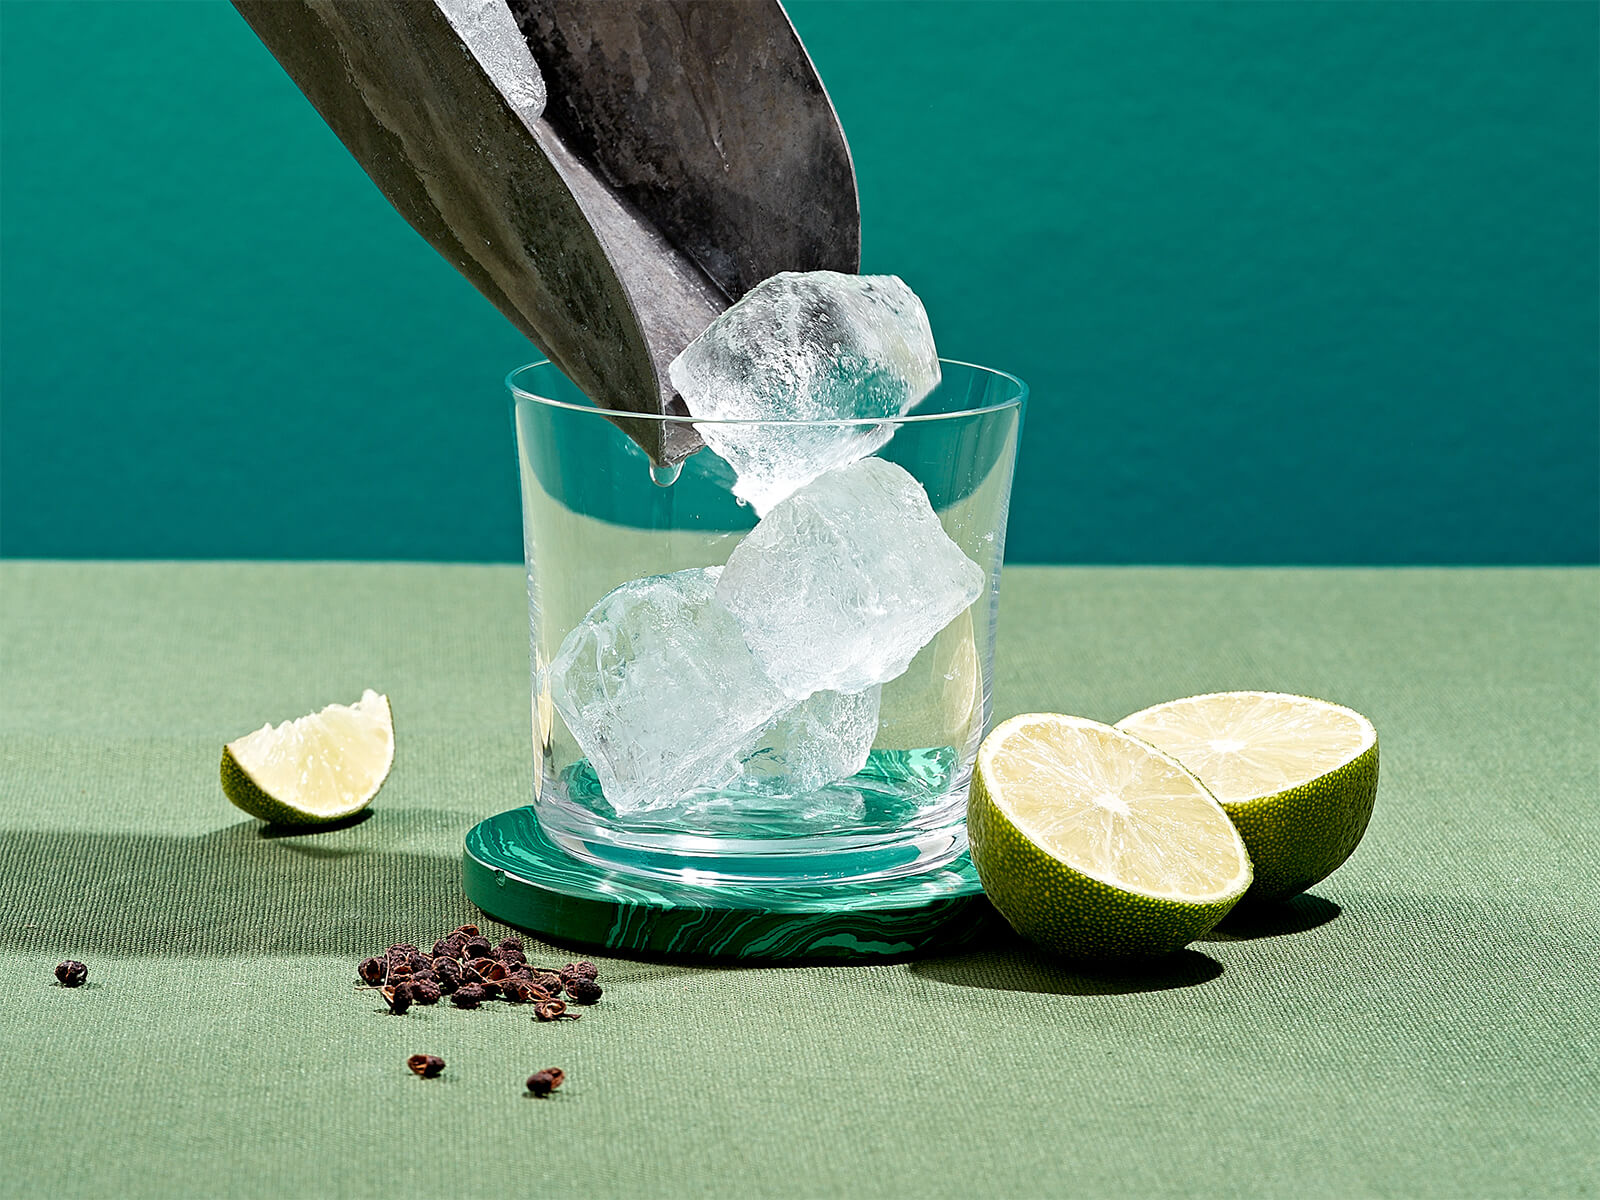 Cocktail Tipps für das Mixen von exzellenten Cocktails zuhause